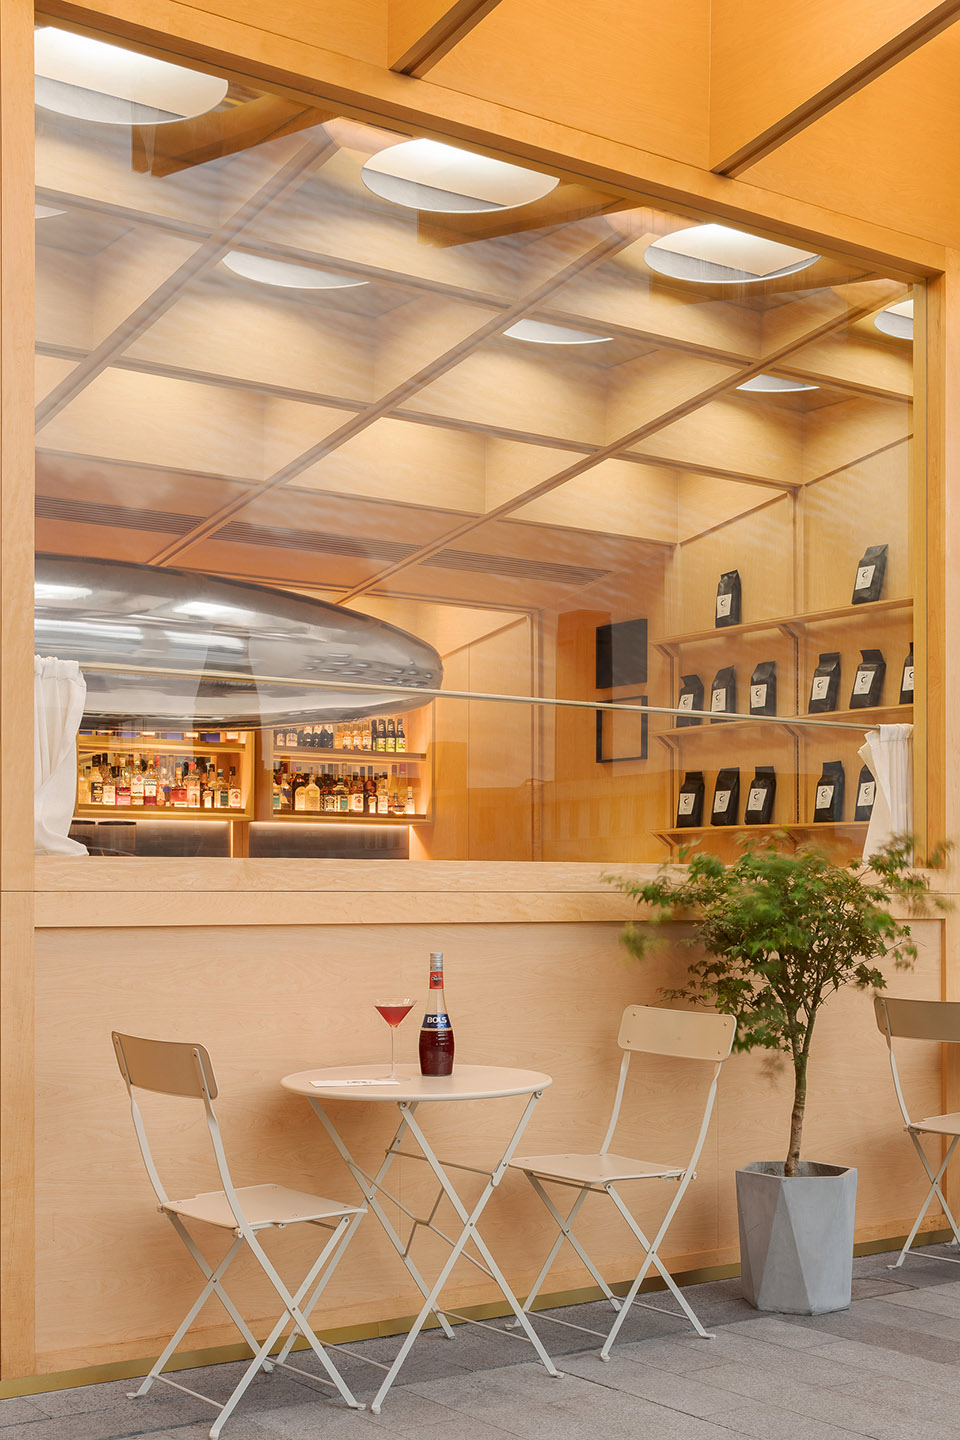 浮廊C2 Cafe &  Bar咖啡厅，深圳/专门为年轻人打造的“空中楼阁”-17